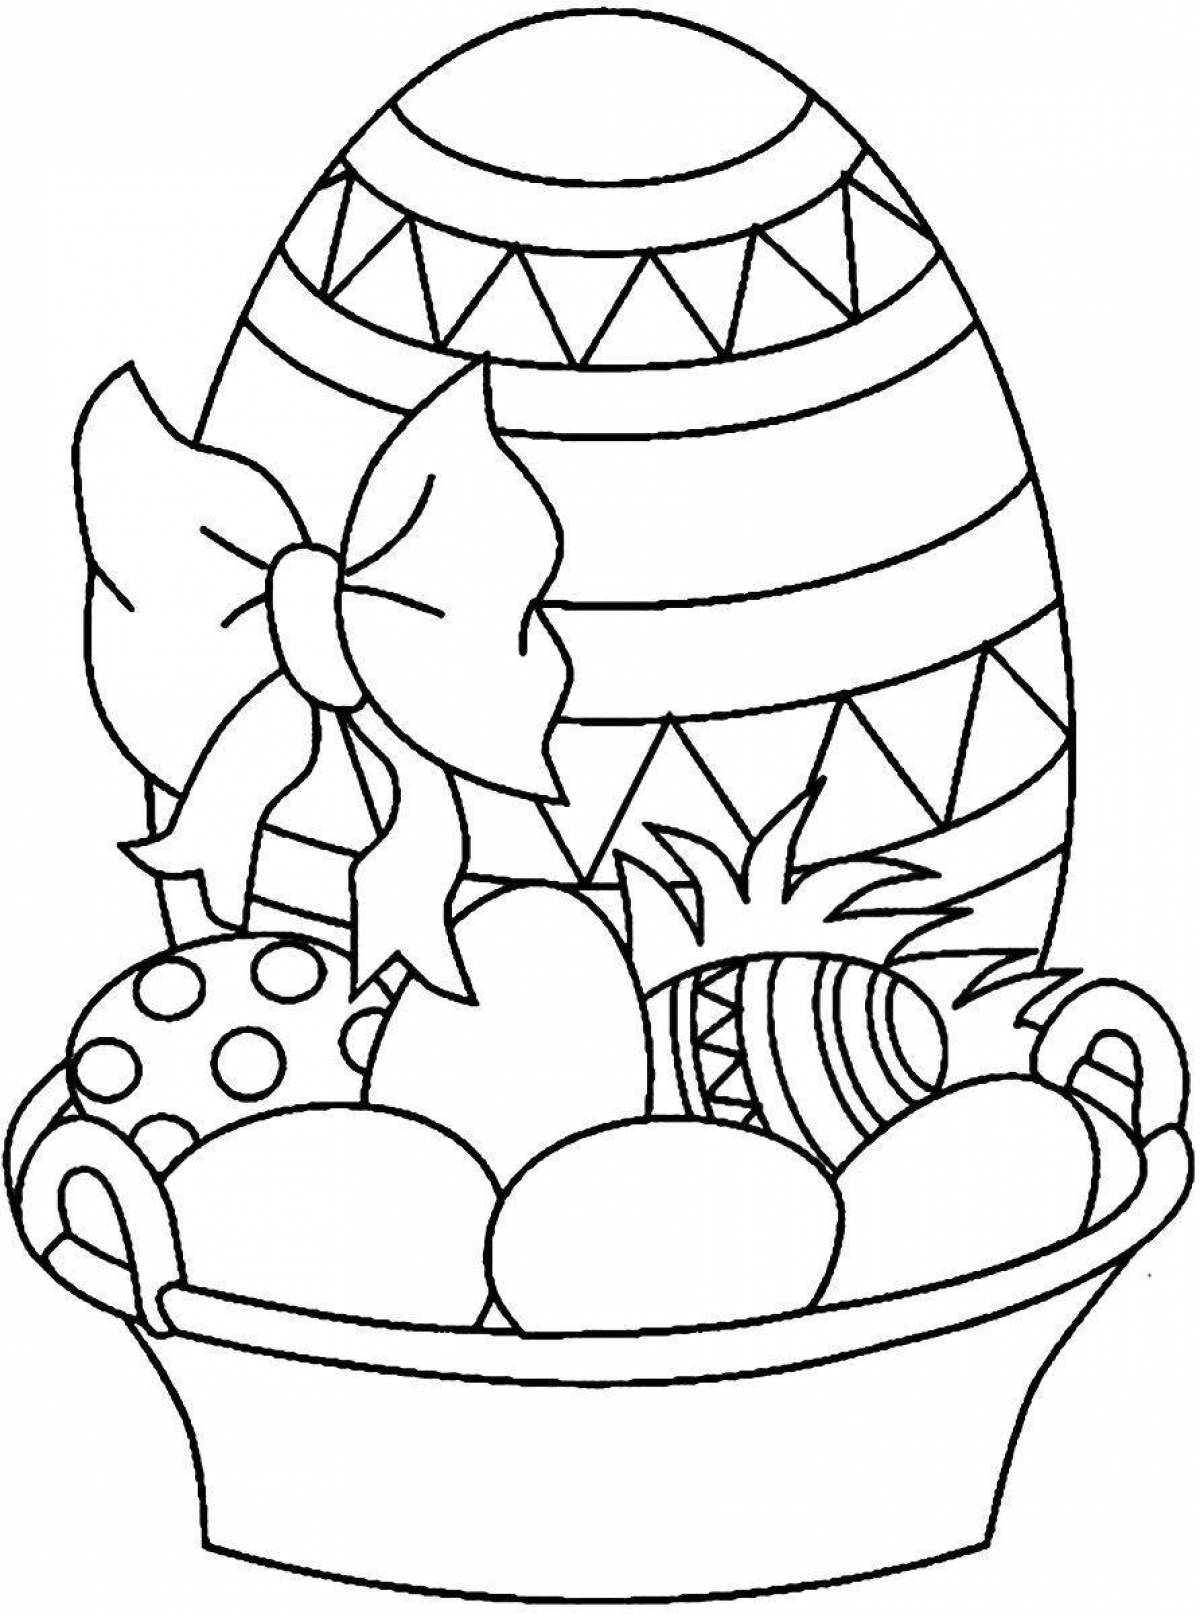 Раскрашиваем пасхальные. Раскраски пасхальные для детей. Раскраска Пасха для детей. Пасхальное яйцо раскраска. Раскраска на тему Пасха для детей.